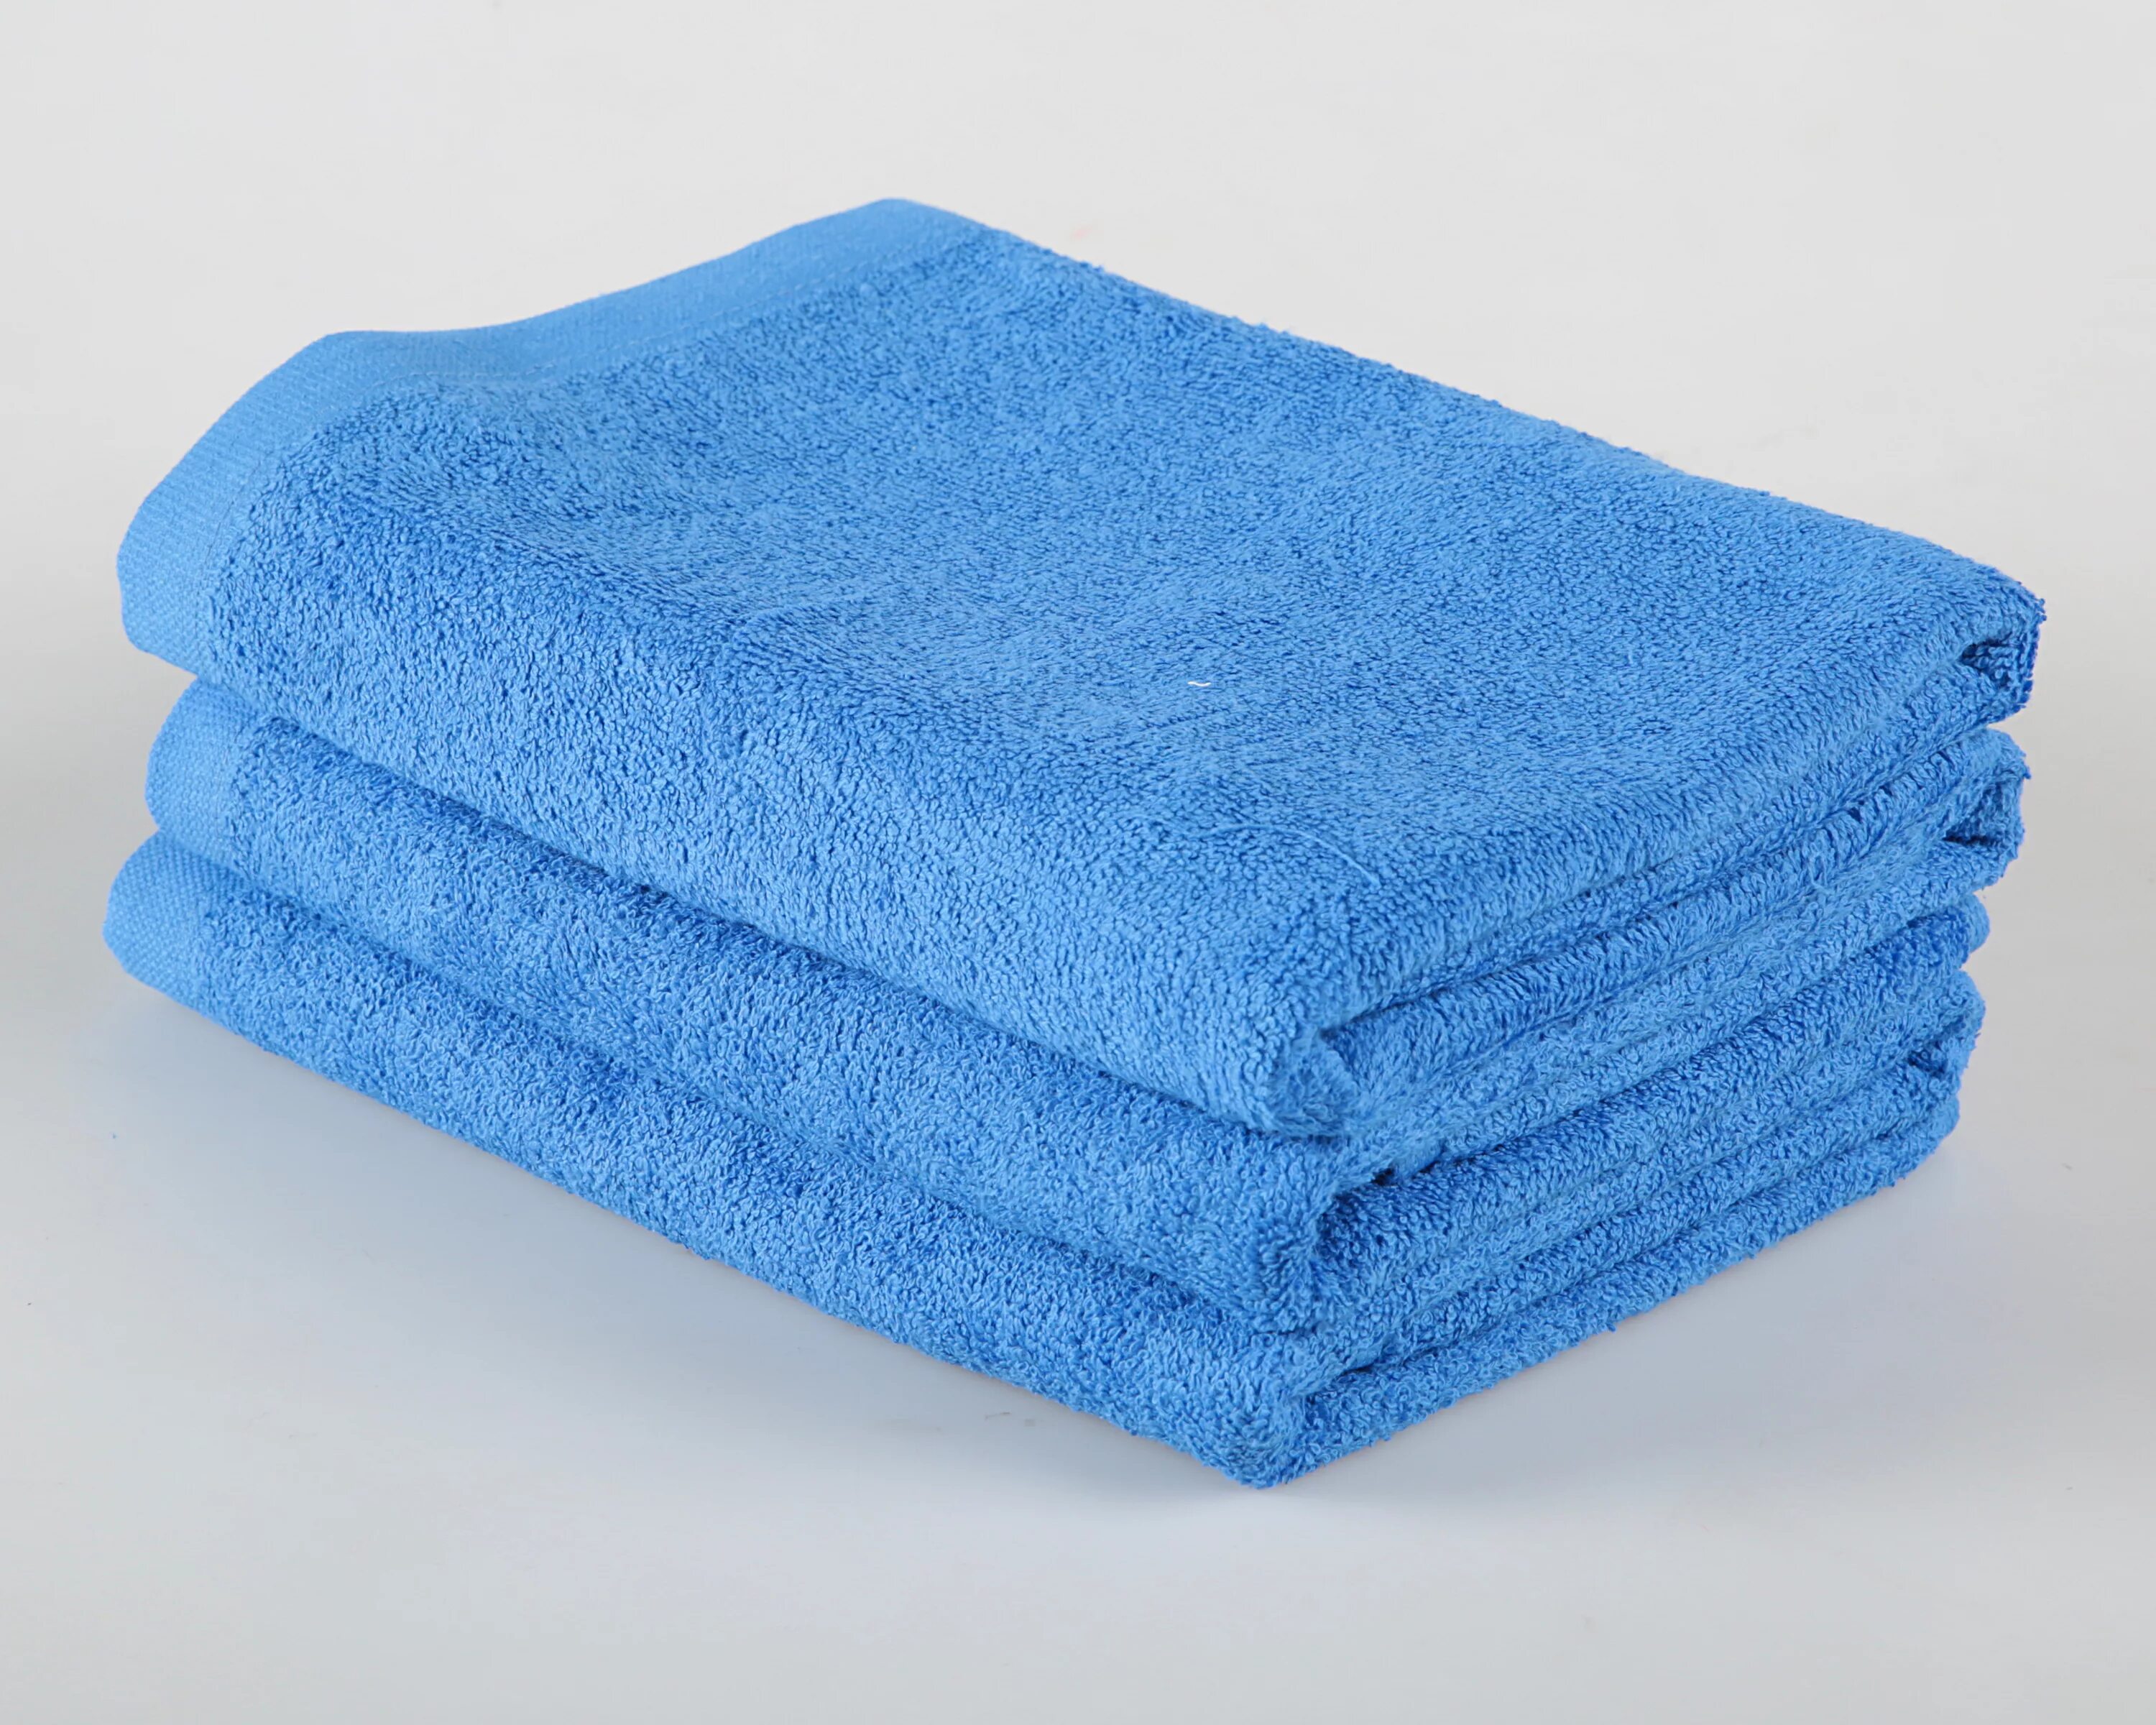 Полотенце 50х100. Полотенце 450 гр/м2 40х70. Mona Liza полотенца. Полотенце 70 140 см махровое 450 гр/м2. Синее полотенце.